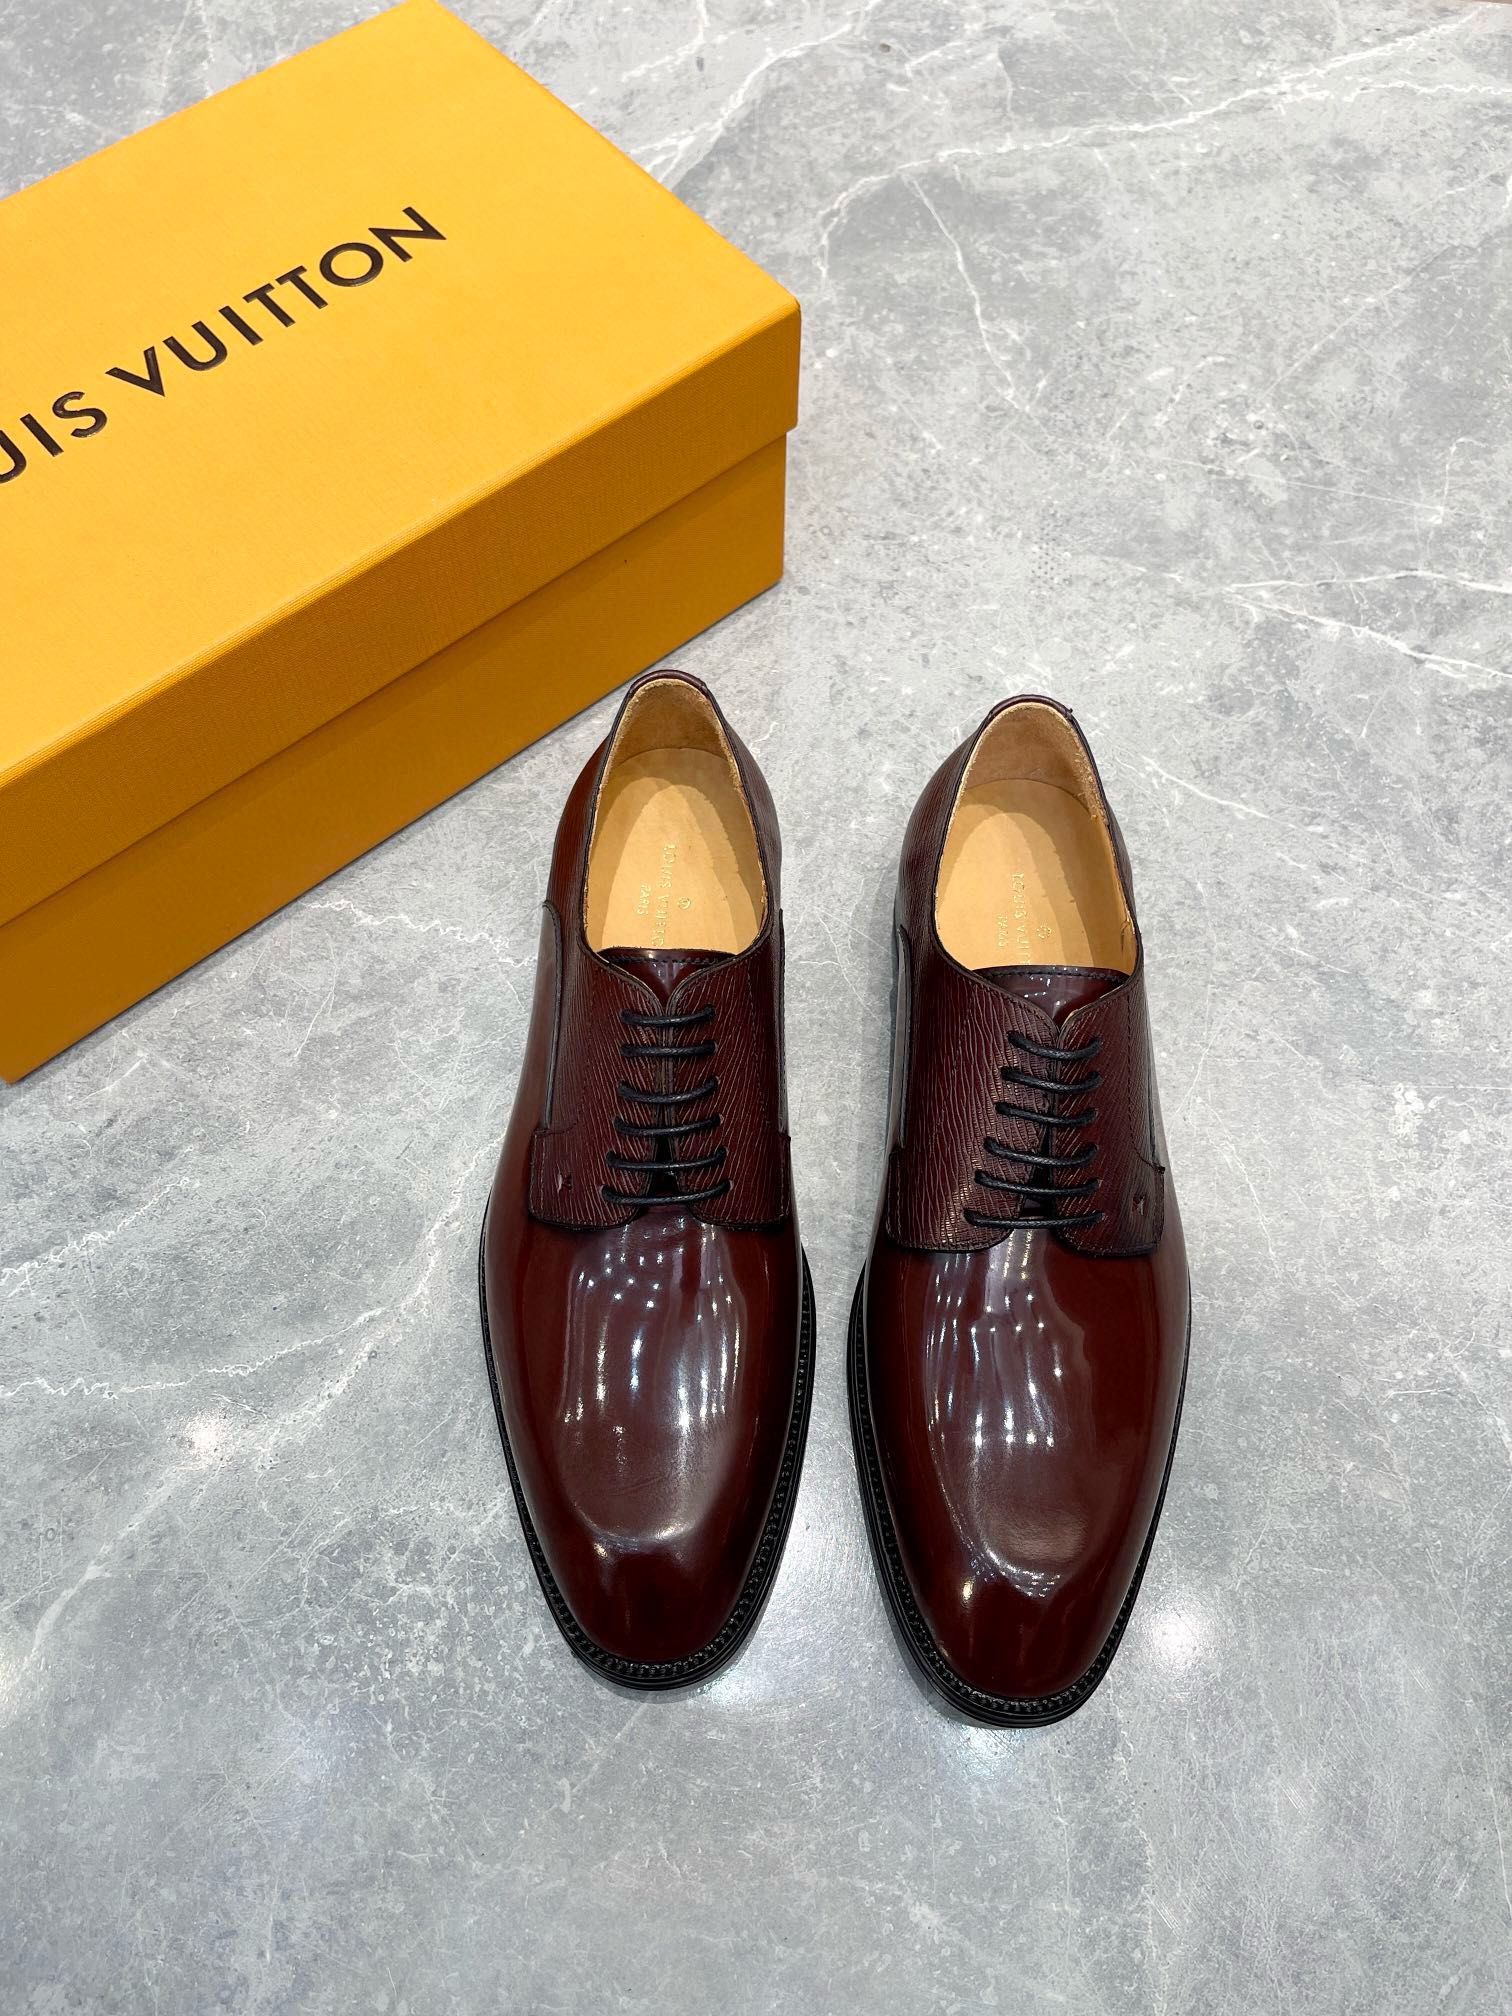 Cheap Wholesale Louis Vuitton Shoes Plain Toe Black Men Calfskin Cowhide Genuine Leather